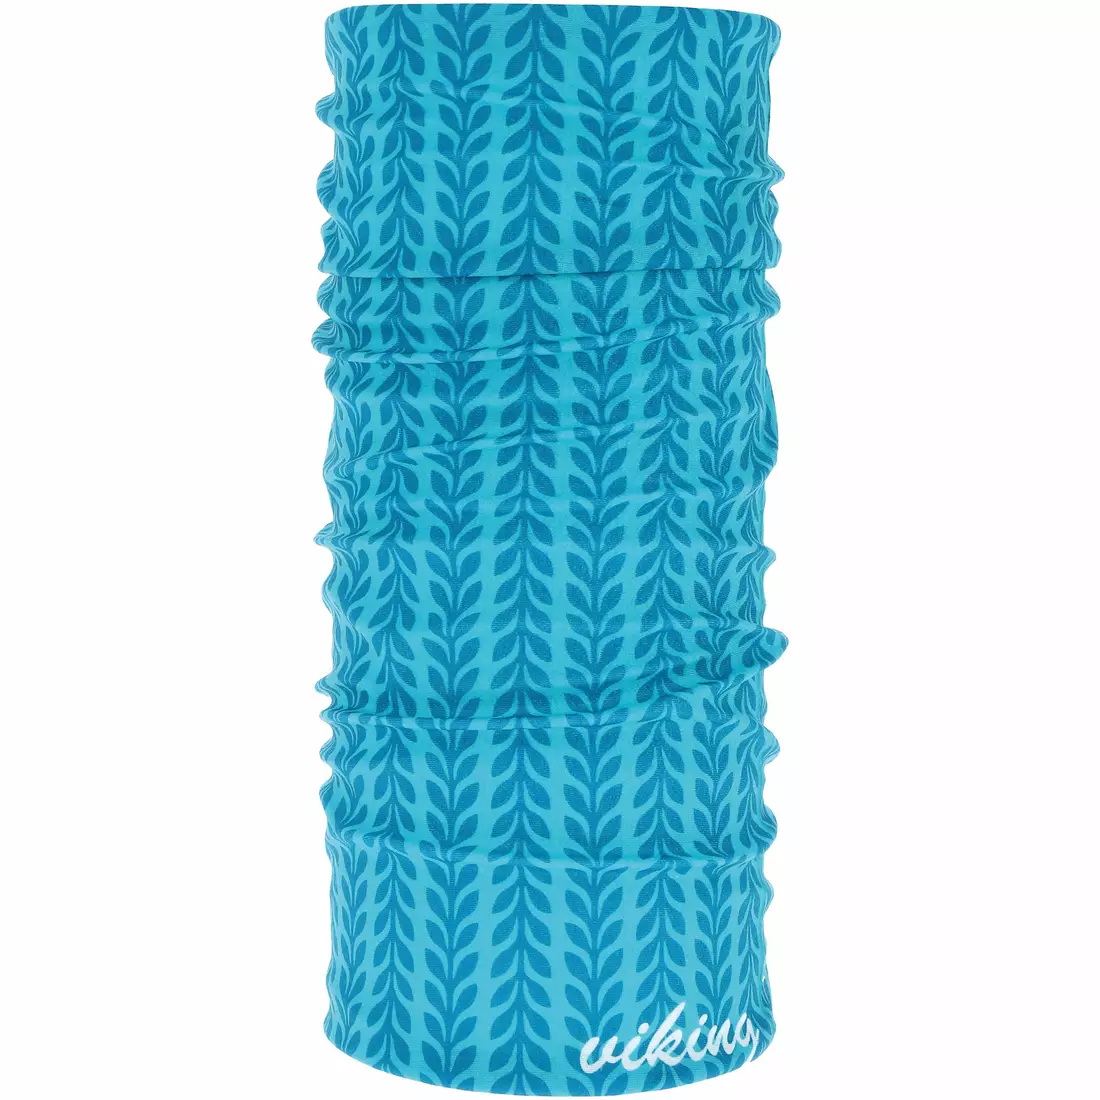 VIKING multifunctional bandana POLARTEC OUTSIDE blue 420/23/7764/70